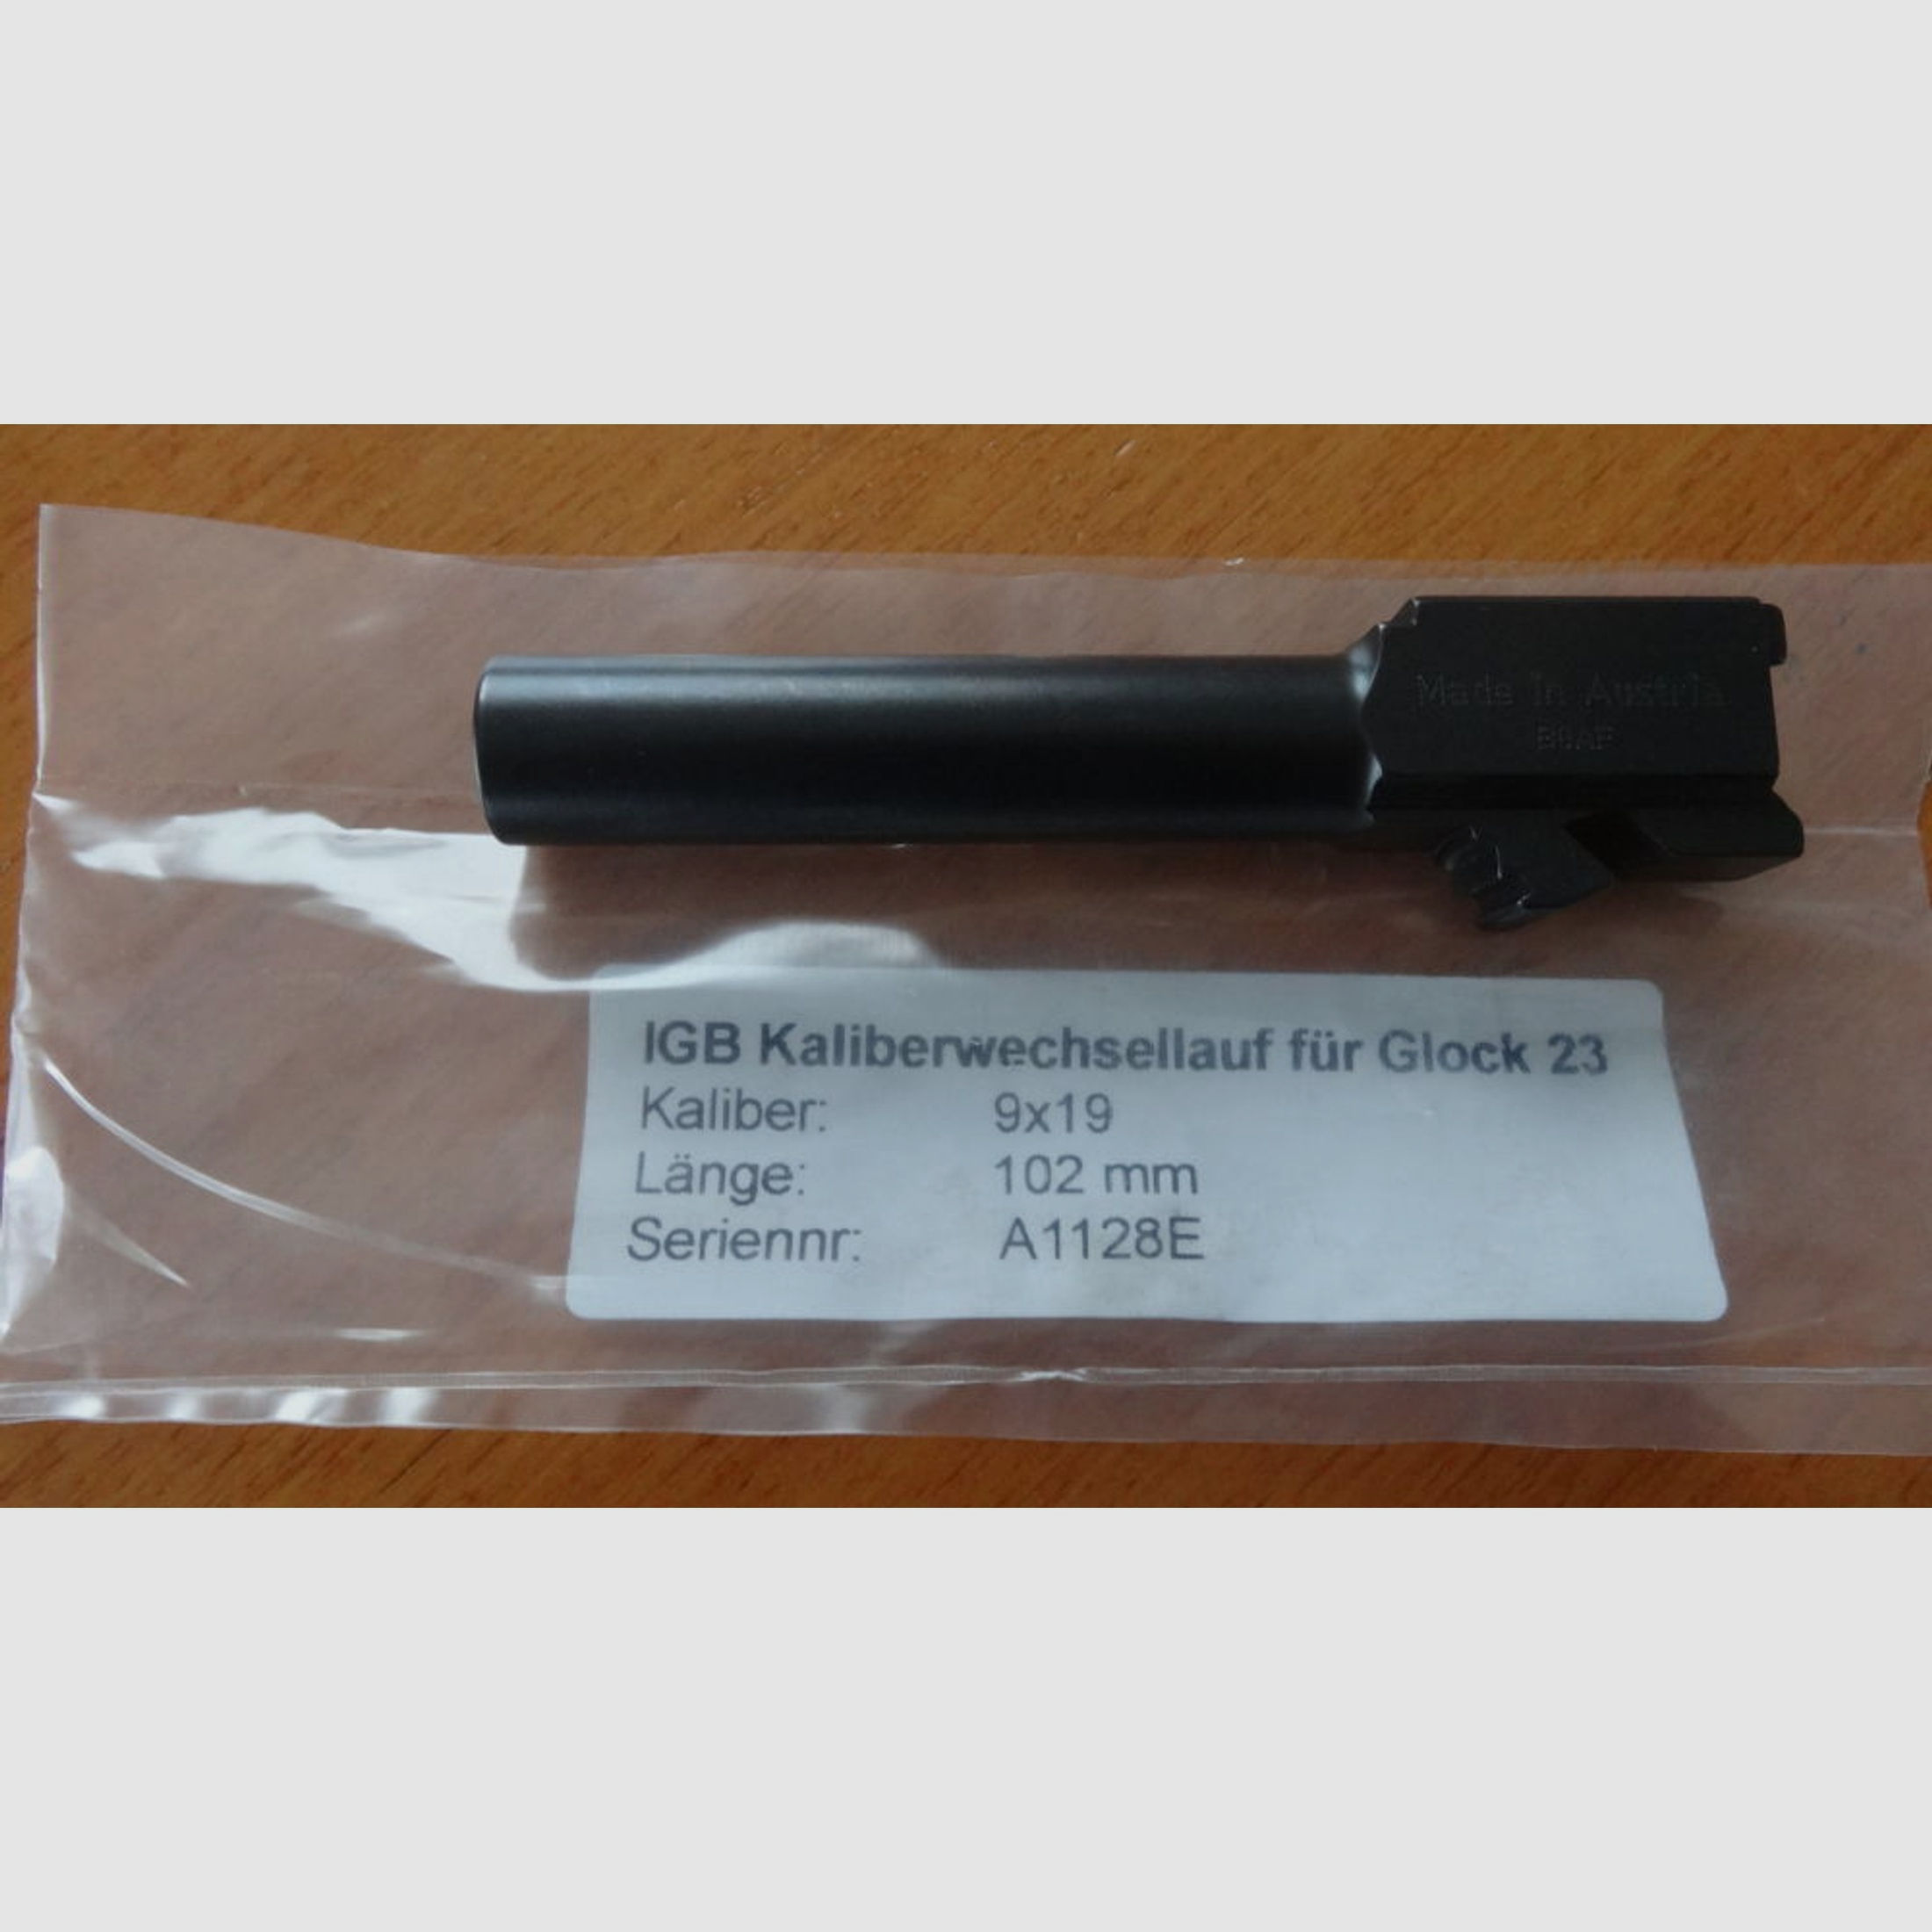 Glock-IBG	 IGB Kaliberwechsellauf 9mm oder 357 Sig für Glock 40S&W Pistole